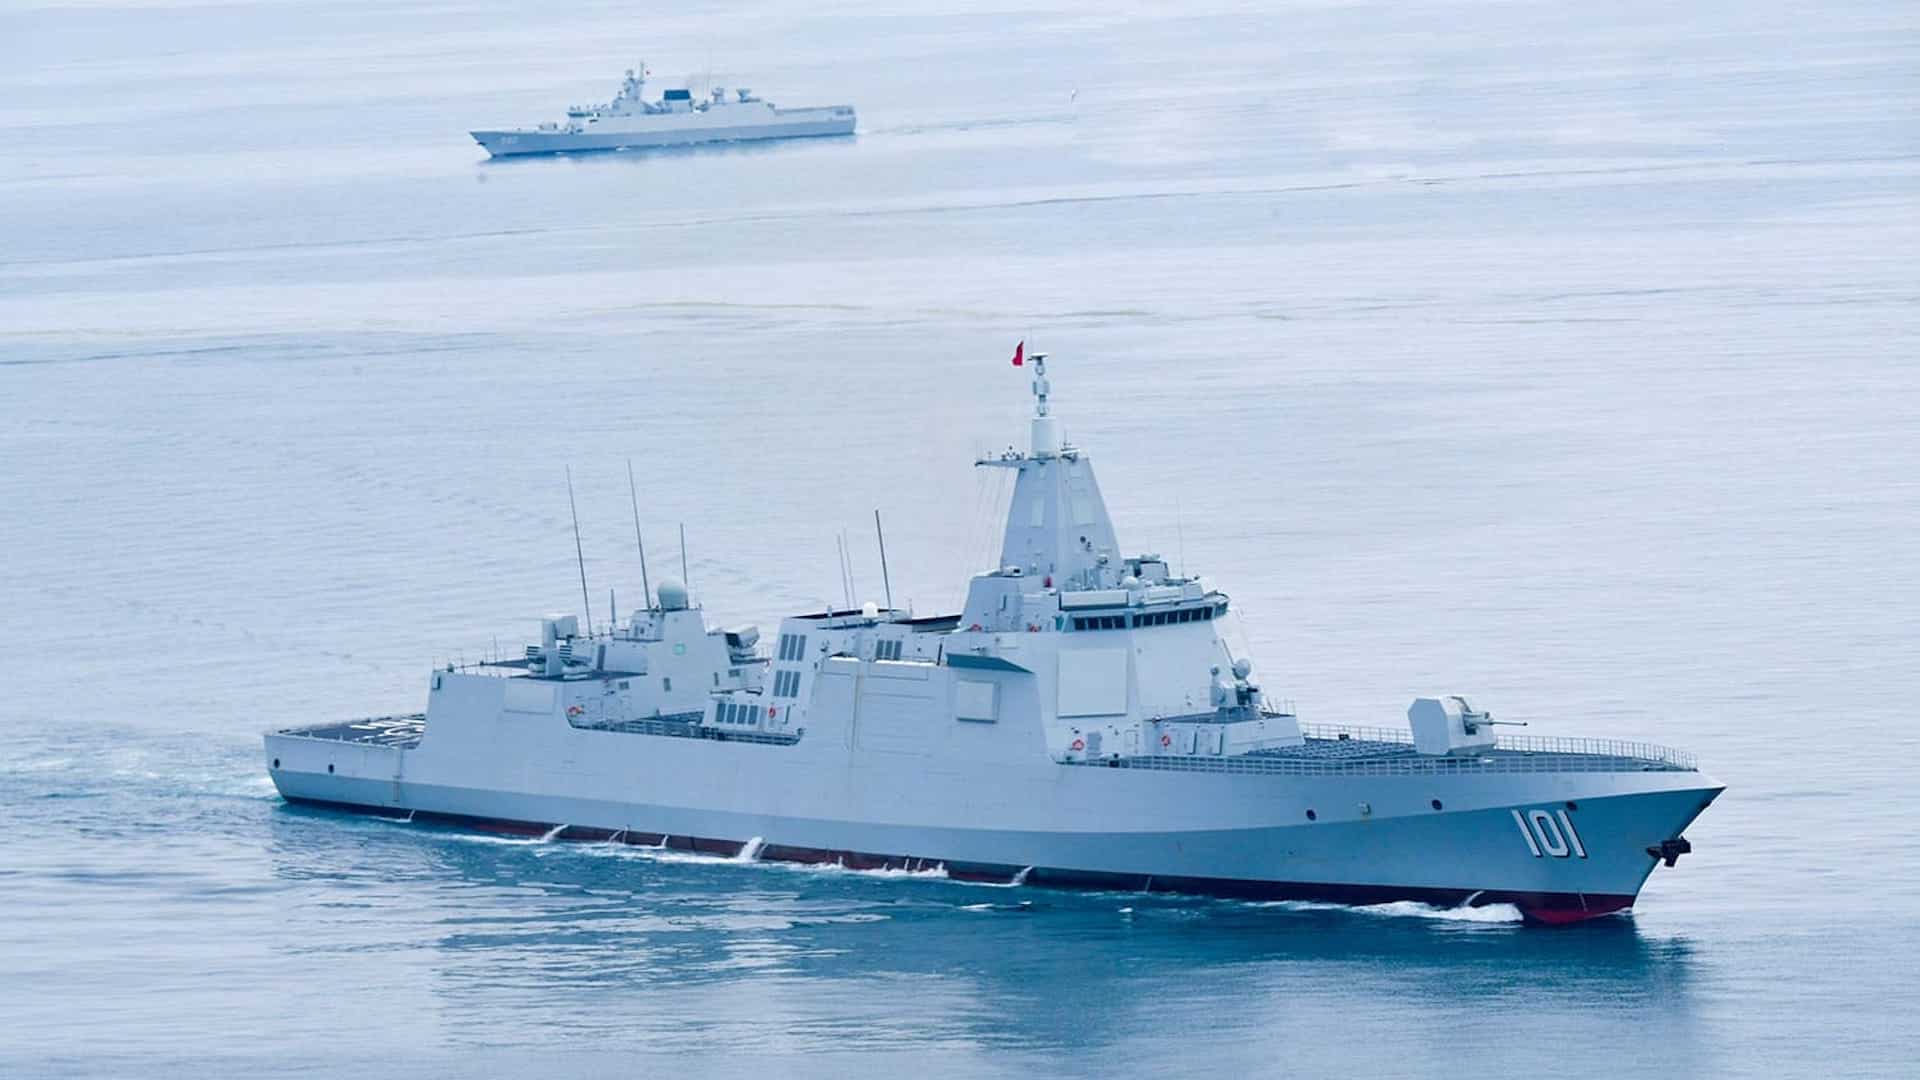 Kina_sjösatter_nya_krigsfartyg